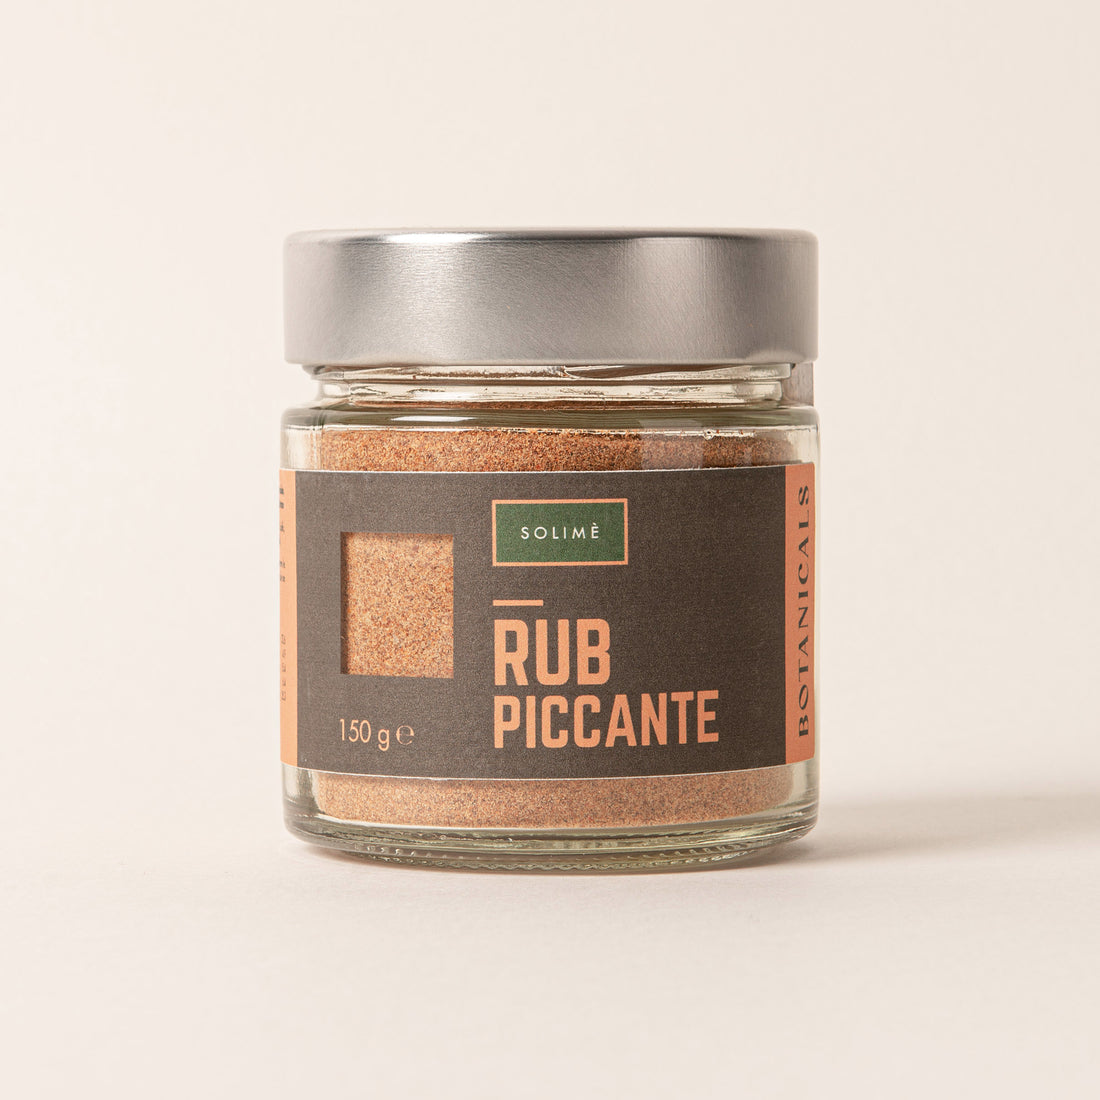 Botanicals - Rub piccante